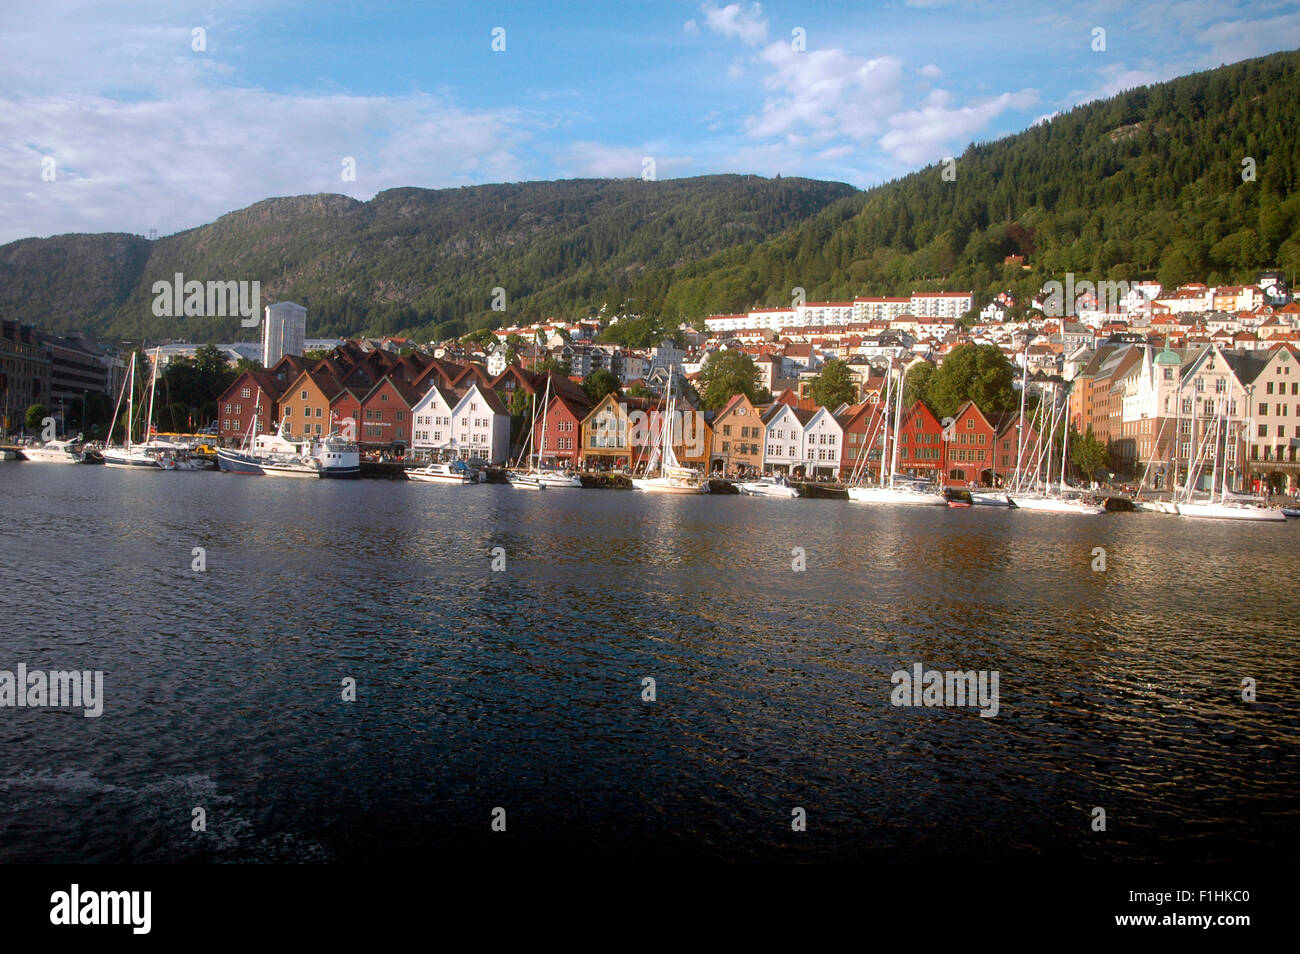 Impressionen - Bergen, Norwegen. Stock Photo